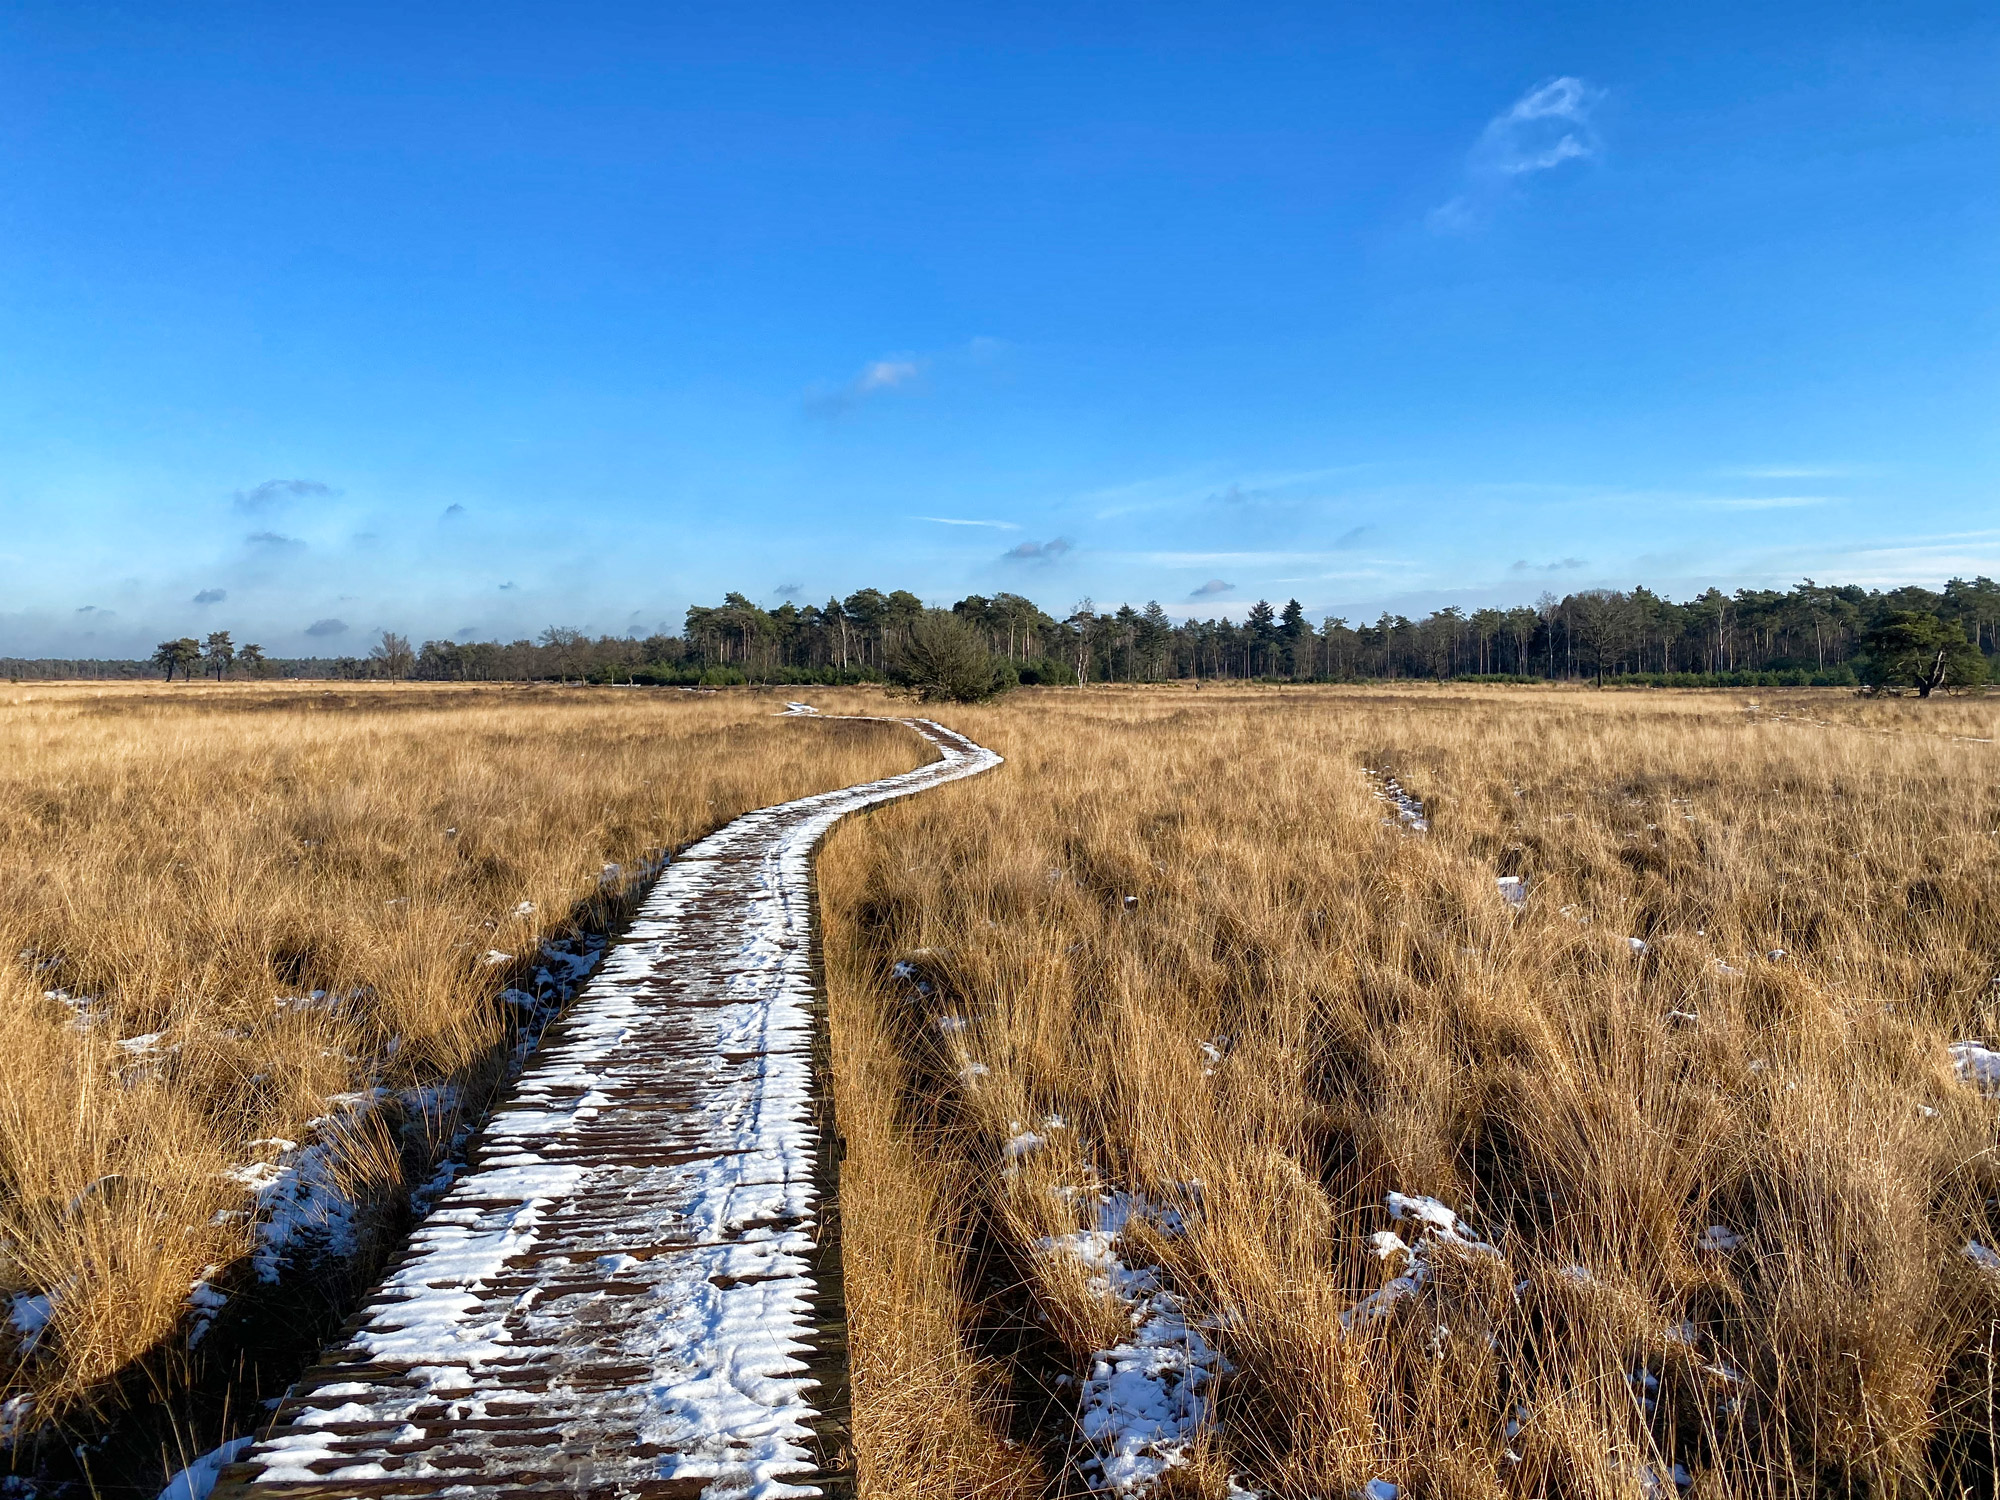 Wandeling: Winterse wandeling over de Strabrechtse Heide